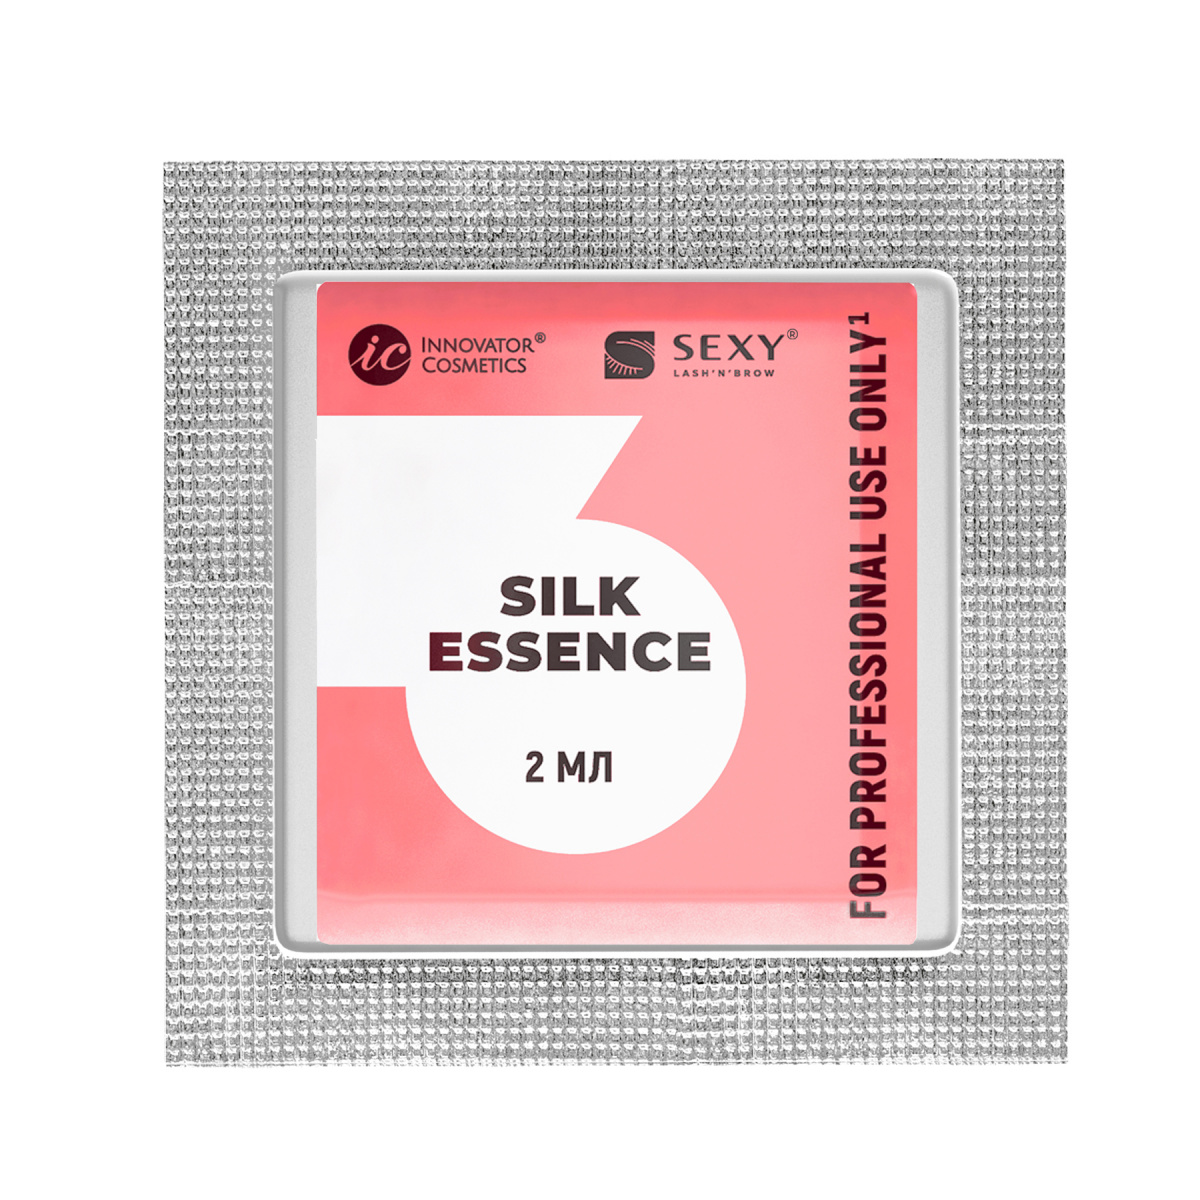 Sexy Lamination состав для ламинирования №3 "Silk essence" в саше, 2мл